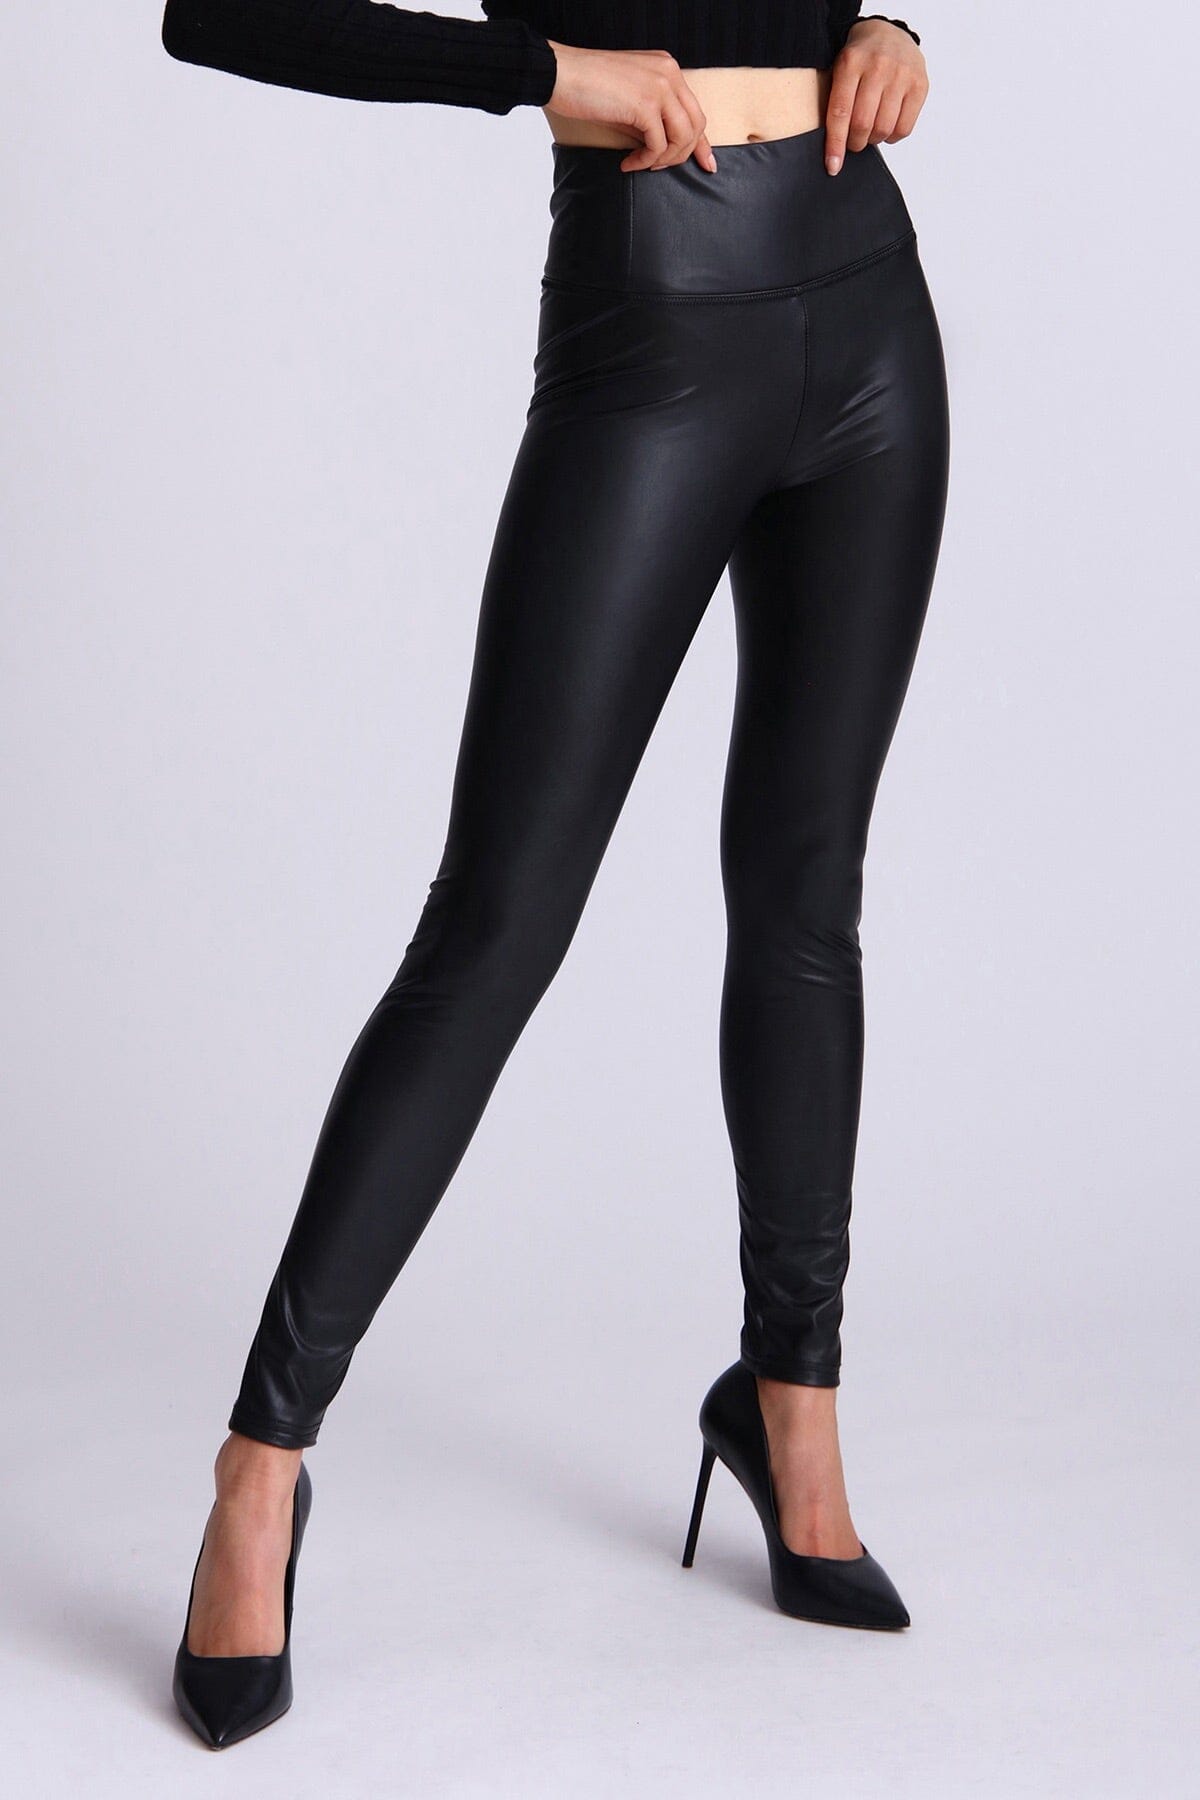 Black faux leather fleece lined legging pants bottoms Bagatelle 